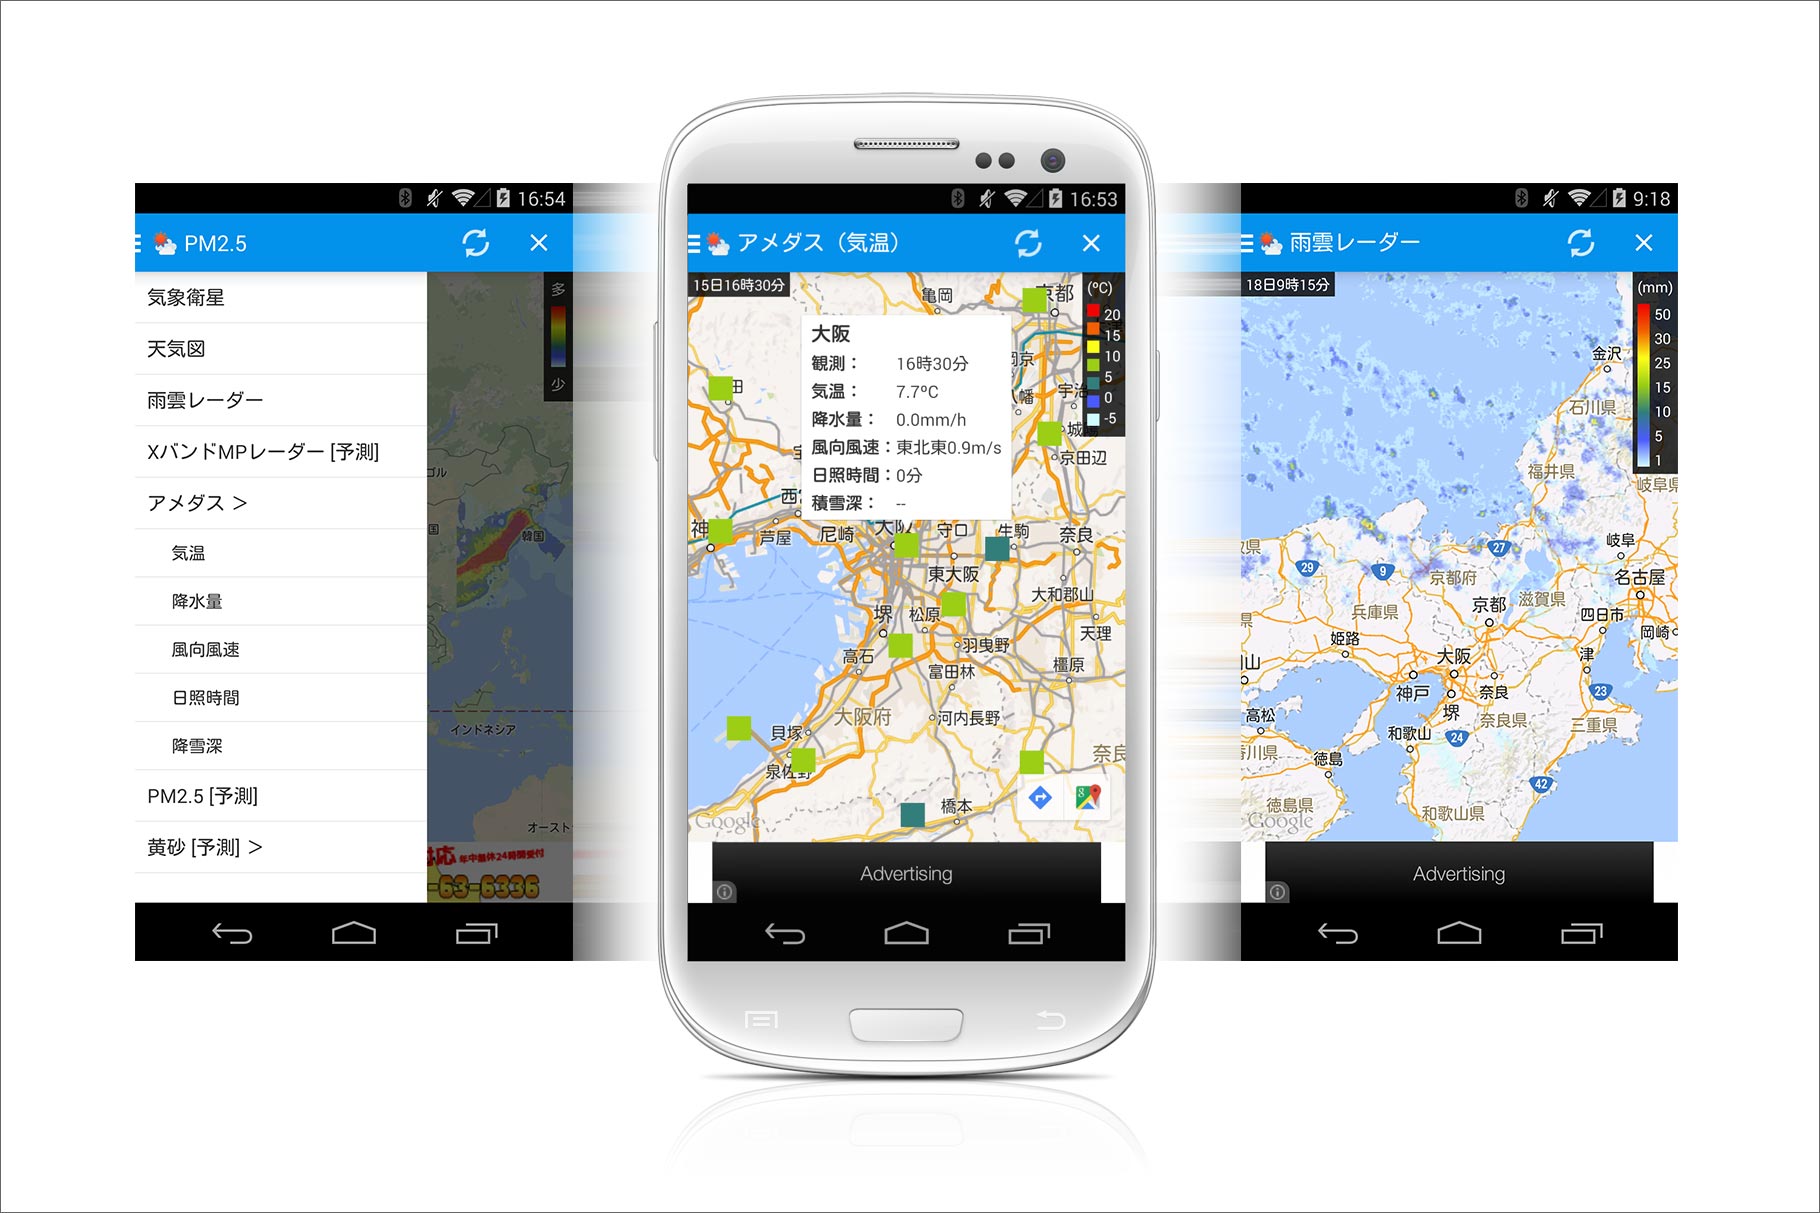 Android版そら案内の天気画像表示メニューと各表示